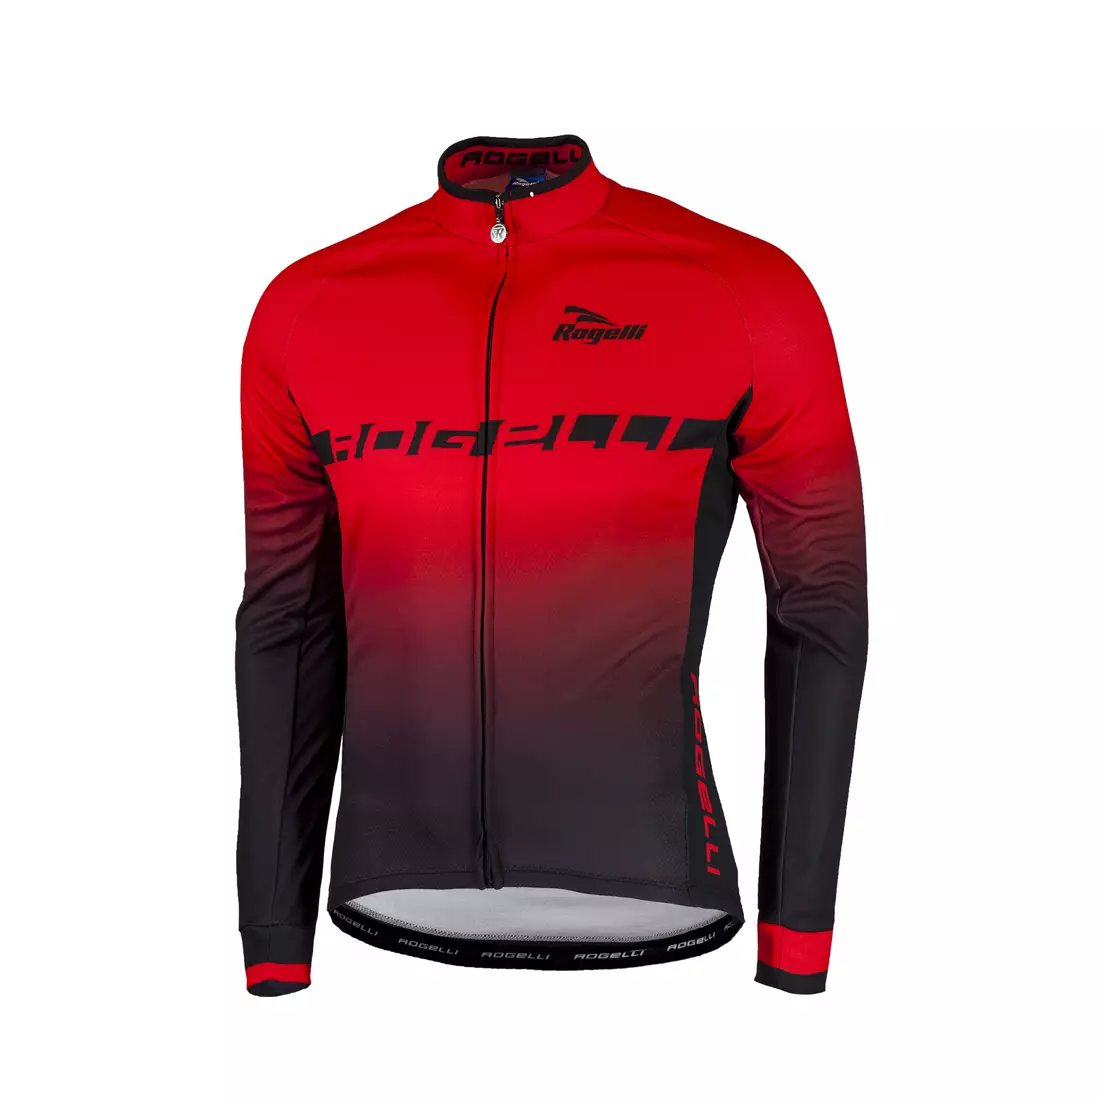 ROGELLI ISPIRATO kerékpáros pulóver, fekete-piros 001.403